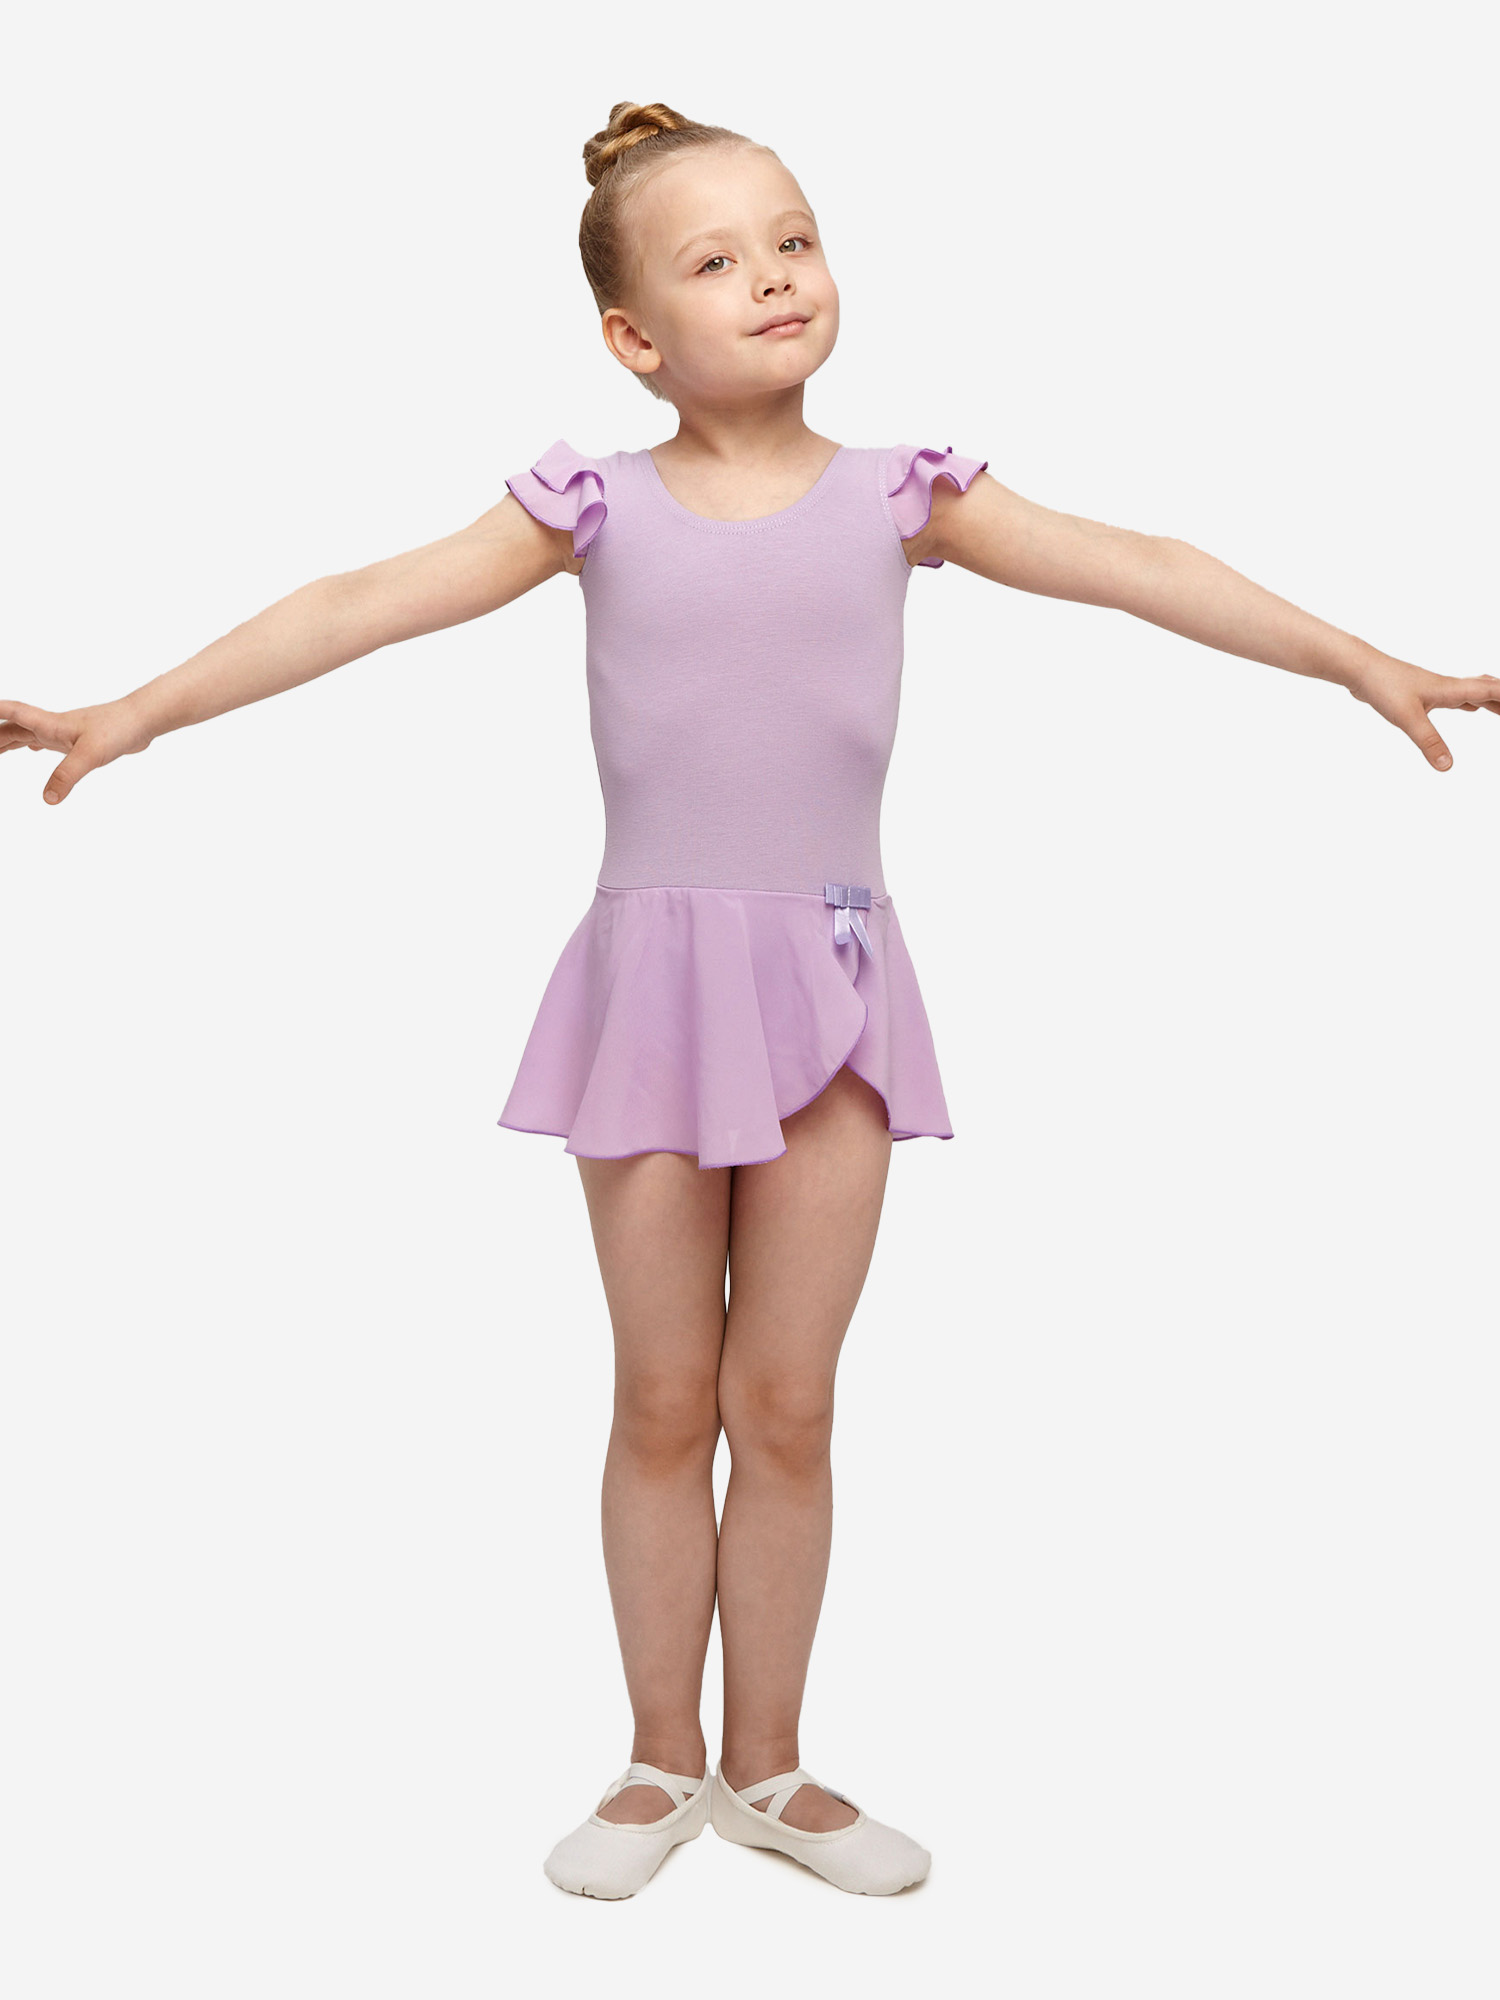 Купальник гимнастический Belkina с юбкой для танцев и тренировок, Фиолетовый купальник гимнастический belkina с юбкой пачкой для выступлений фиолетовый